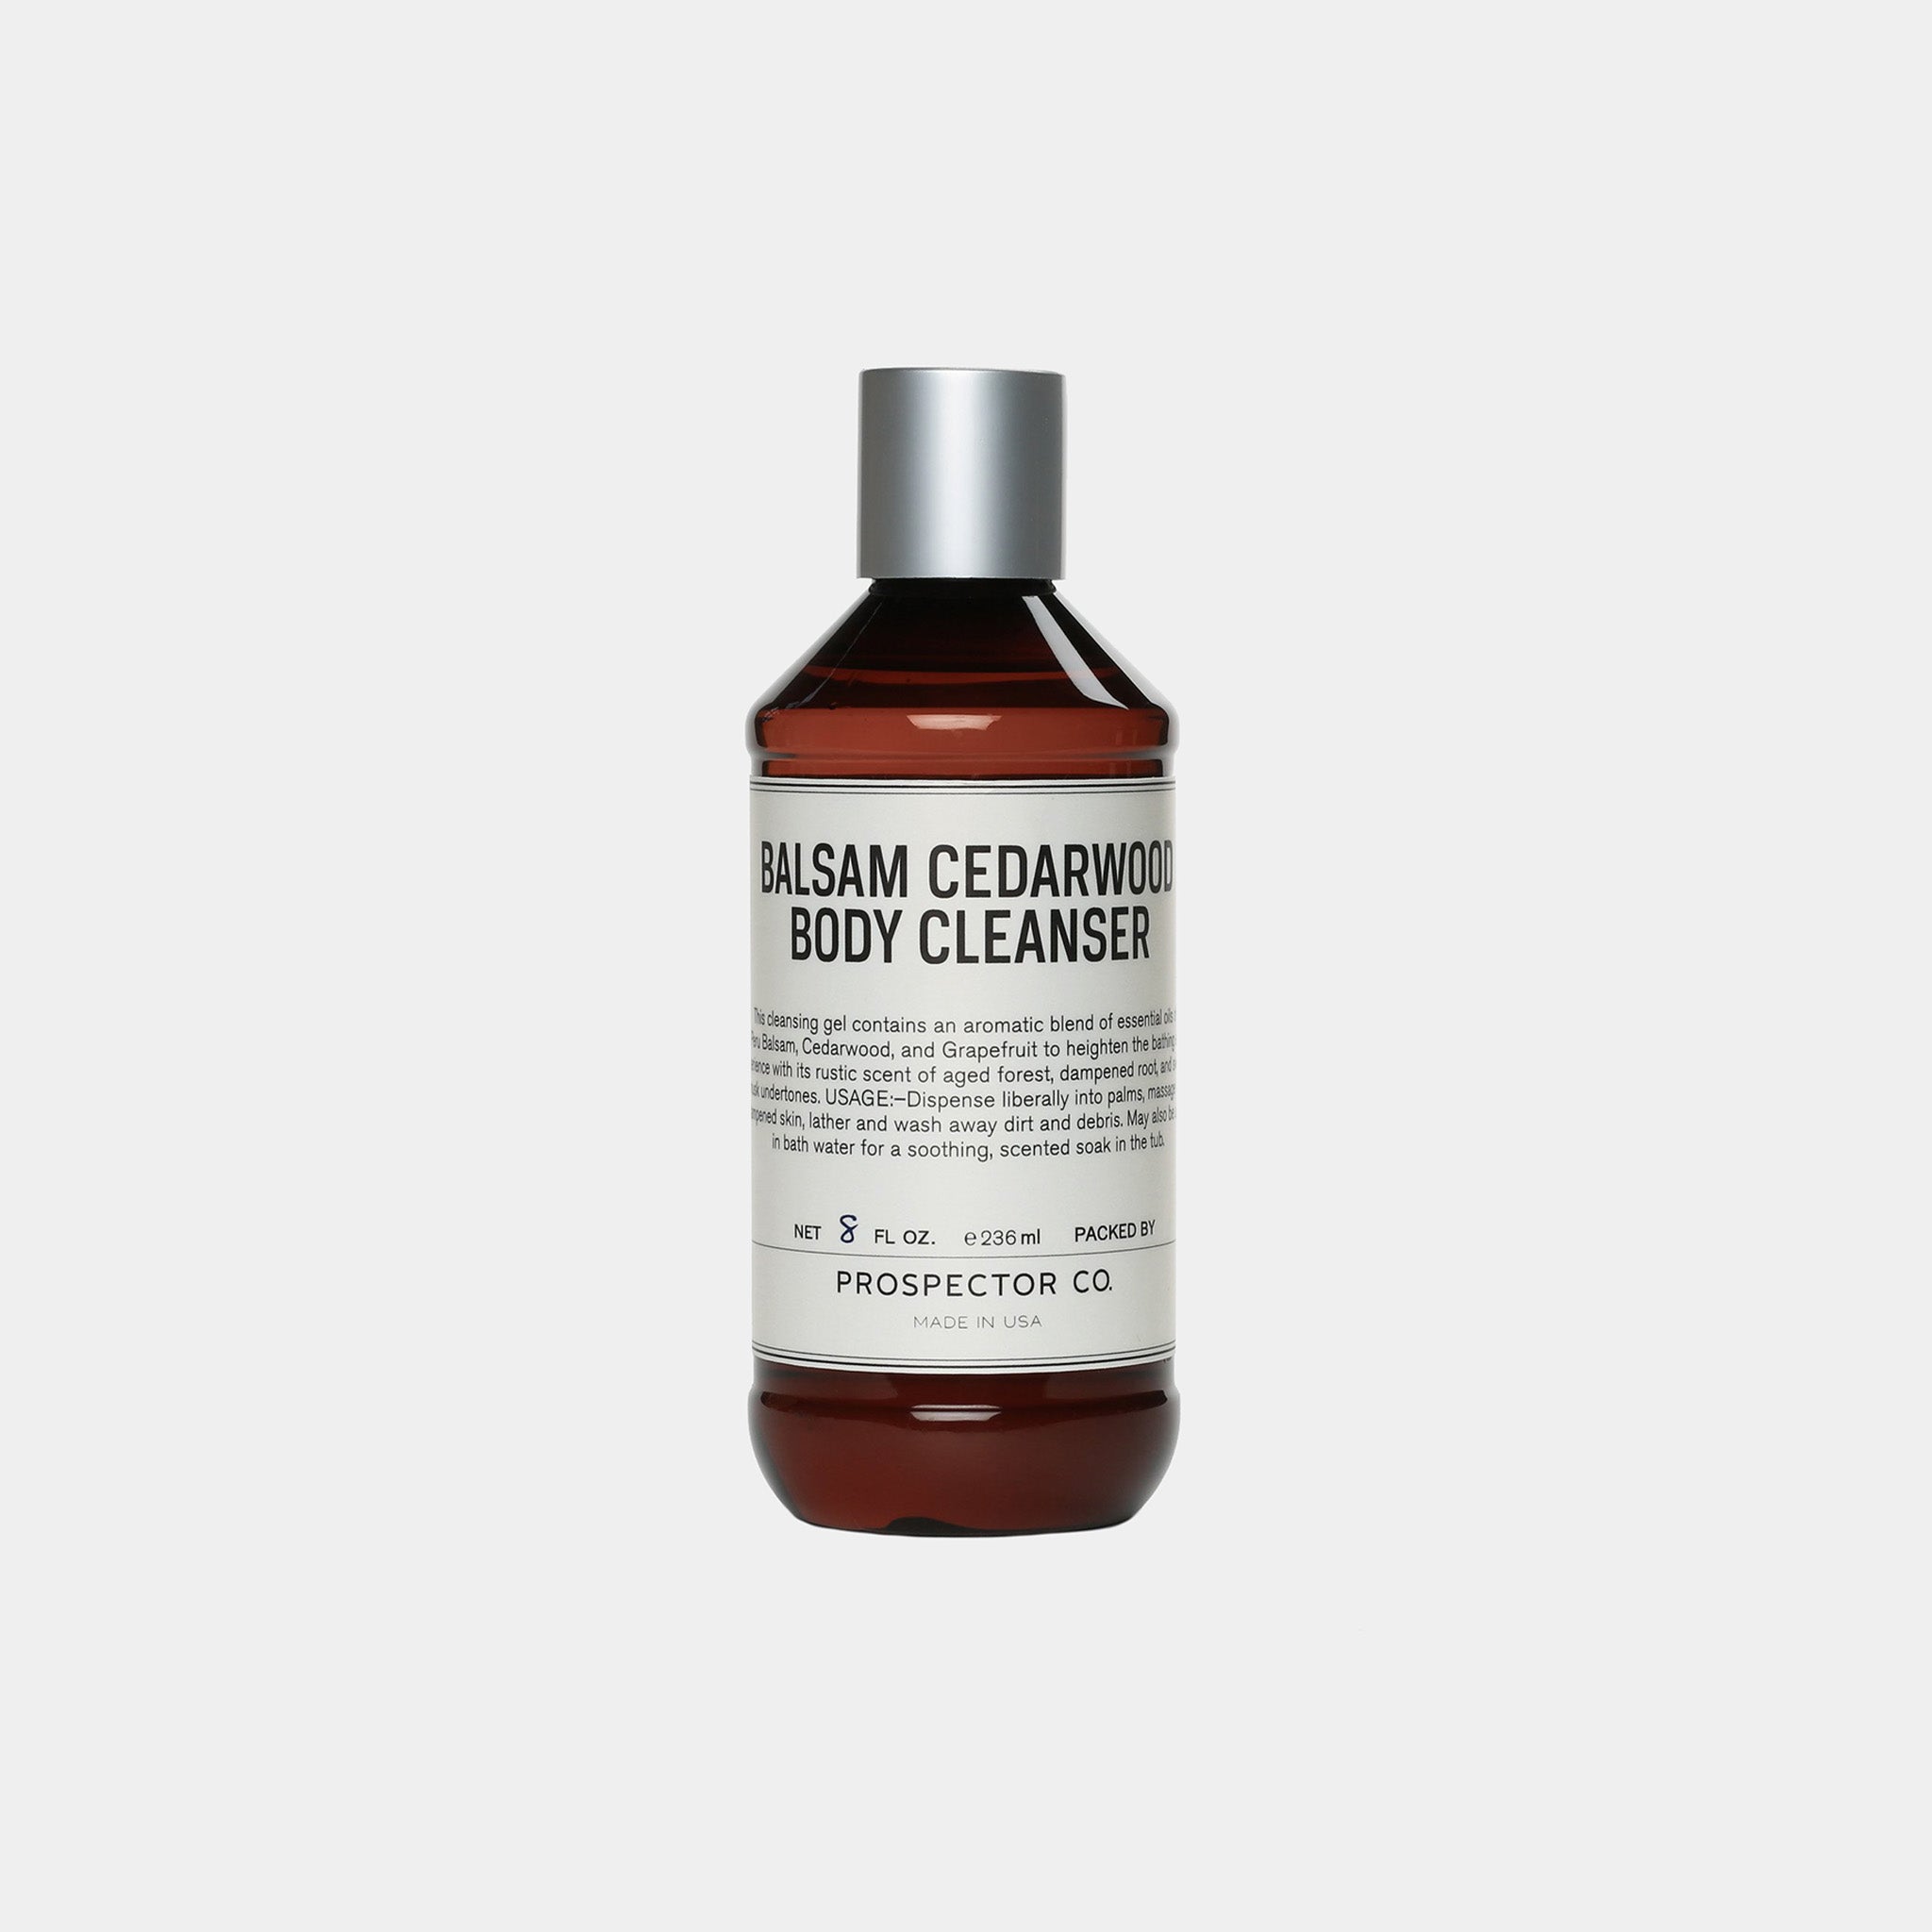 Balsam Cedarwood Body Cleanser